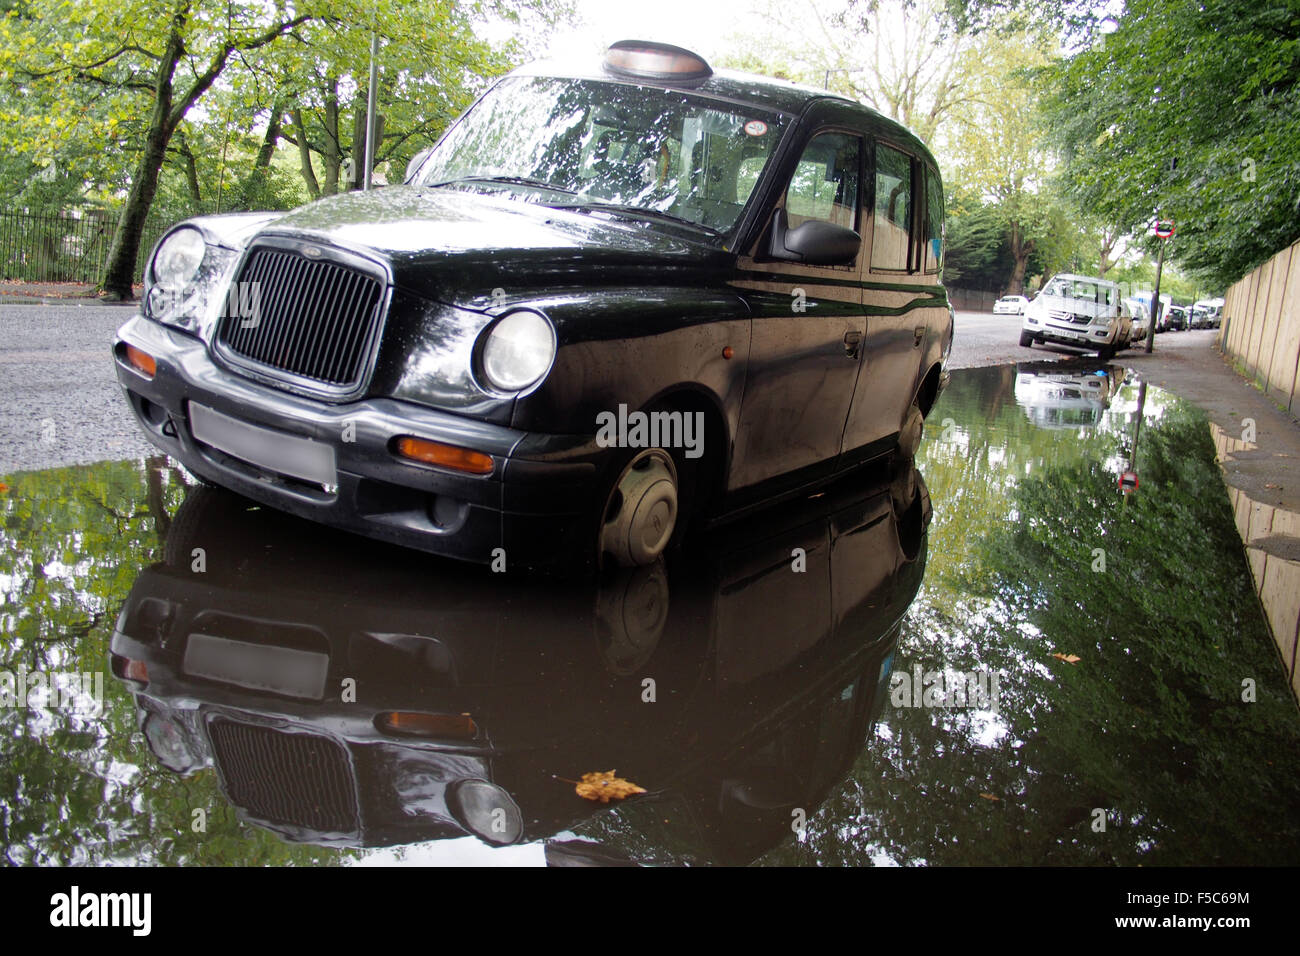 schwarzes Taxi Taxi in Pfütze oder Regen Wasser auf London Straße England uk Stockfoto